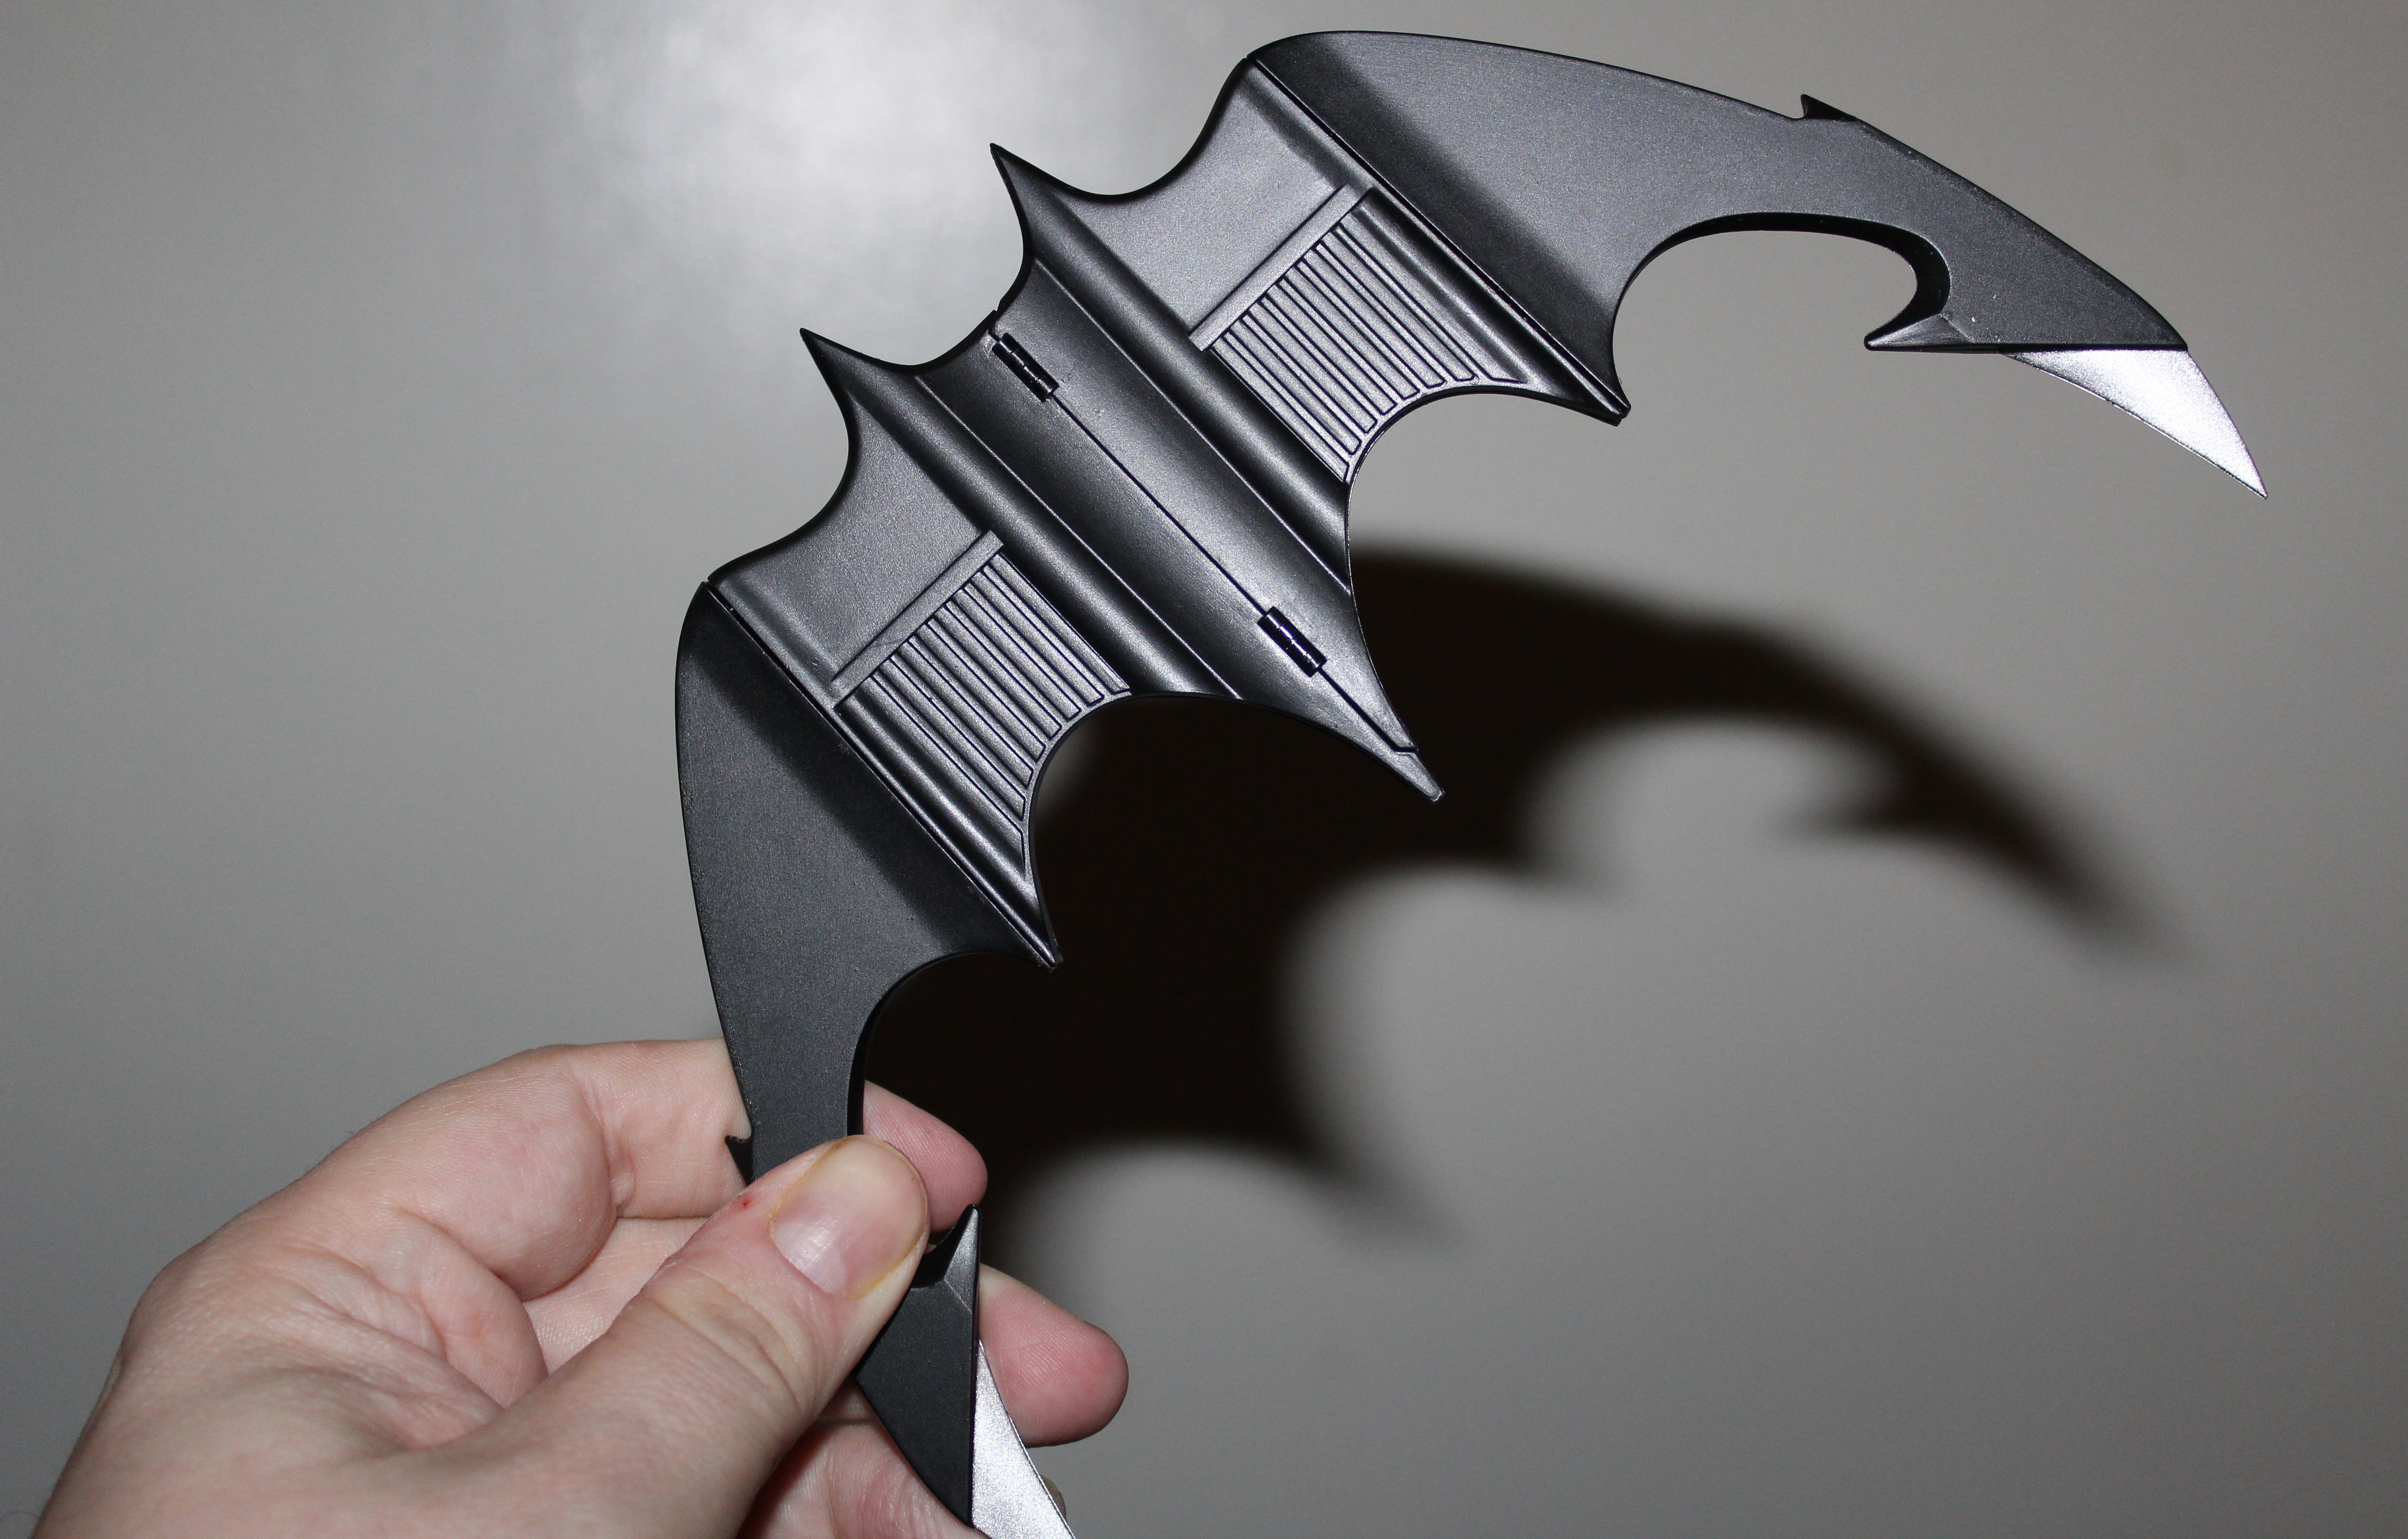 Batarang in-hand.